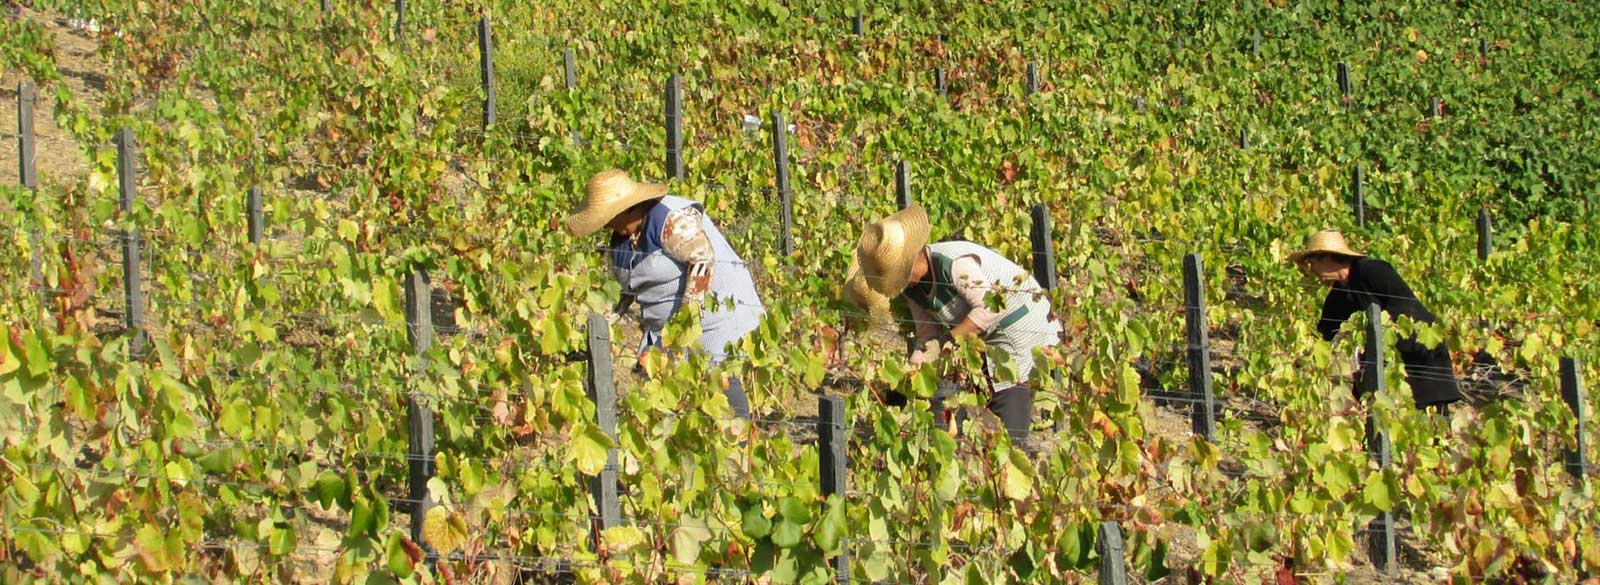 Portugal, el país de las 500 variedades de uva